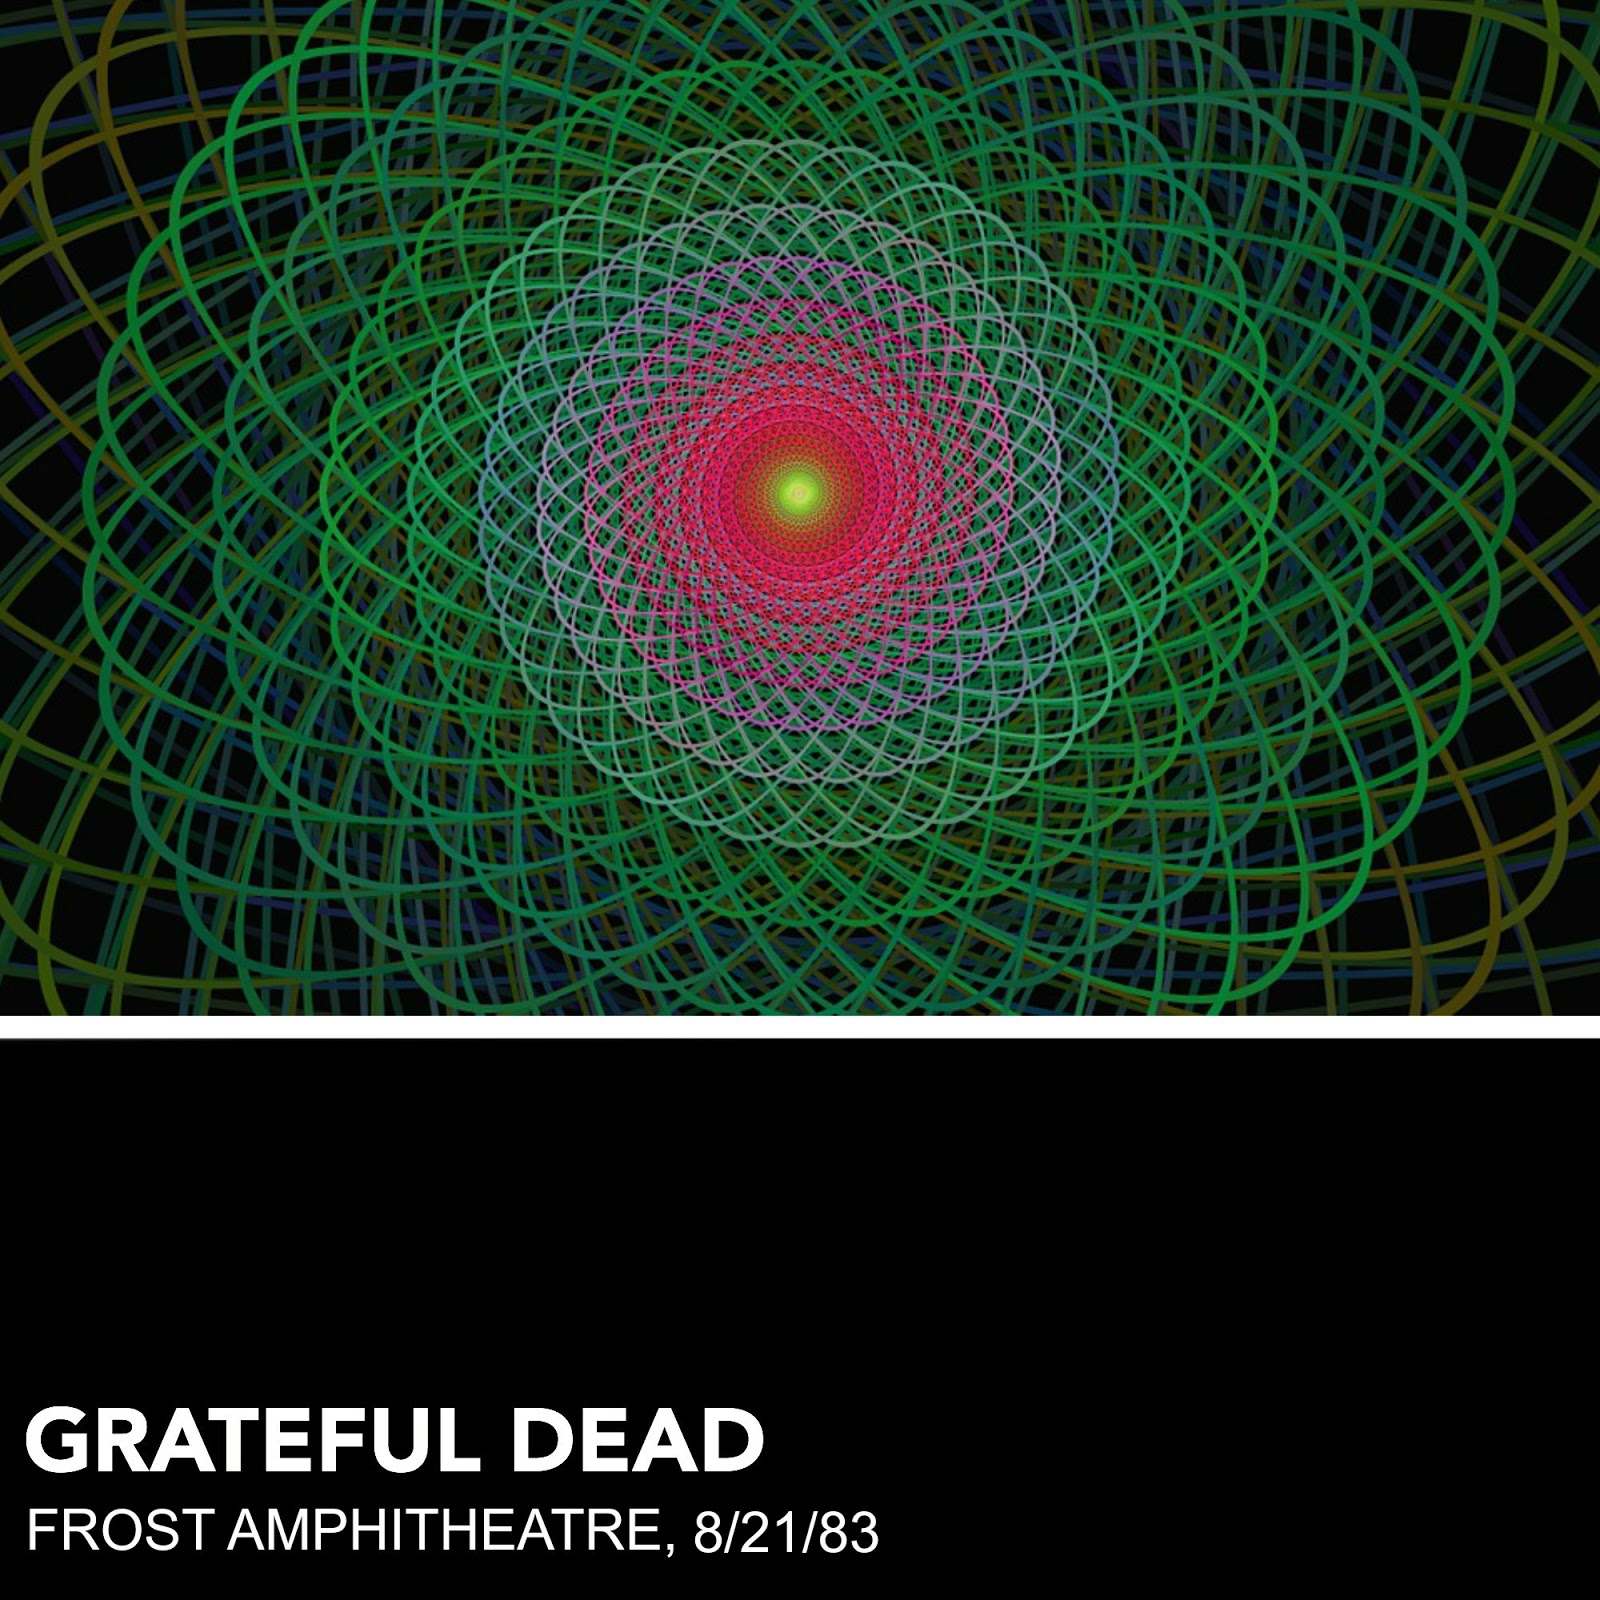 John's Custom Grateful Dead Album Cover Art1600 x 1600